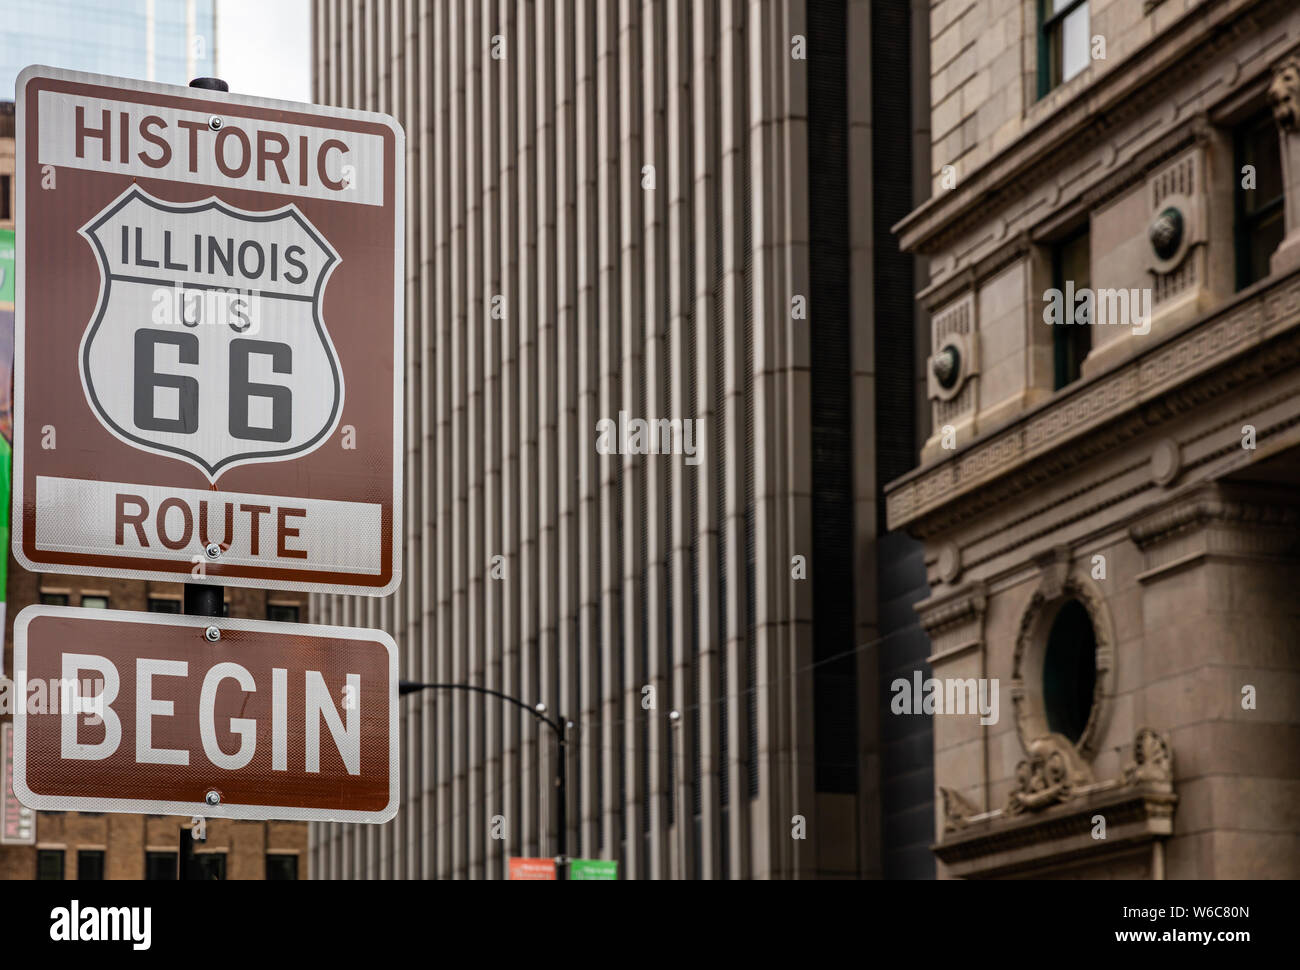 Route 66 Illinois beginnen Schild am Chicago City Downtown. Gebäude Fassade Hintergrund. Route 66, die Mother road, die klassischen historischen Roadtrip in den USA Stockfoto